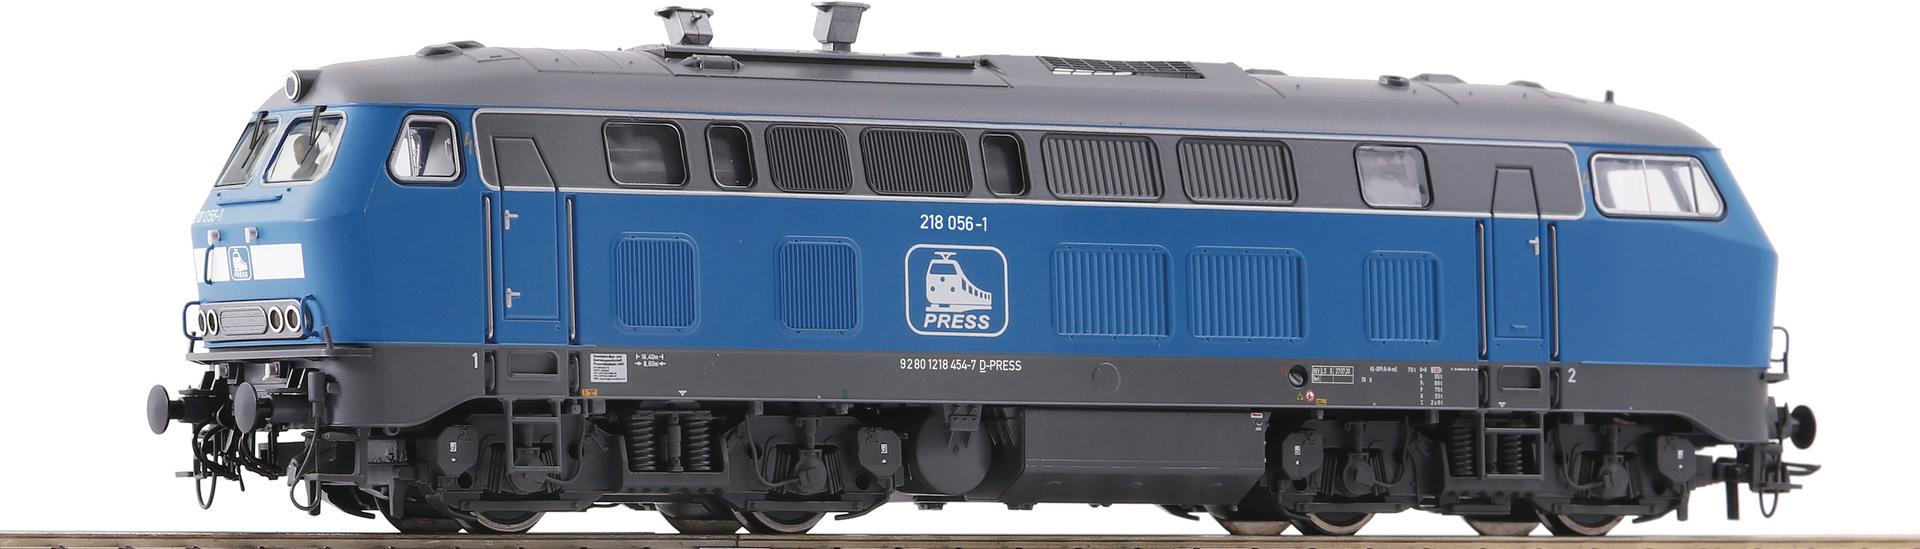 Roco Diesellokomotive 218 056-1 (7310025)